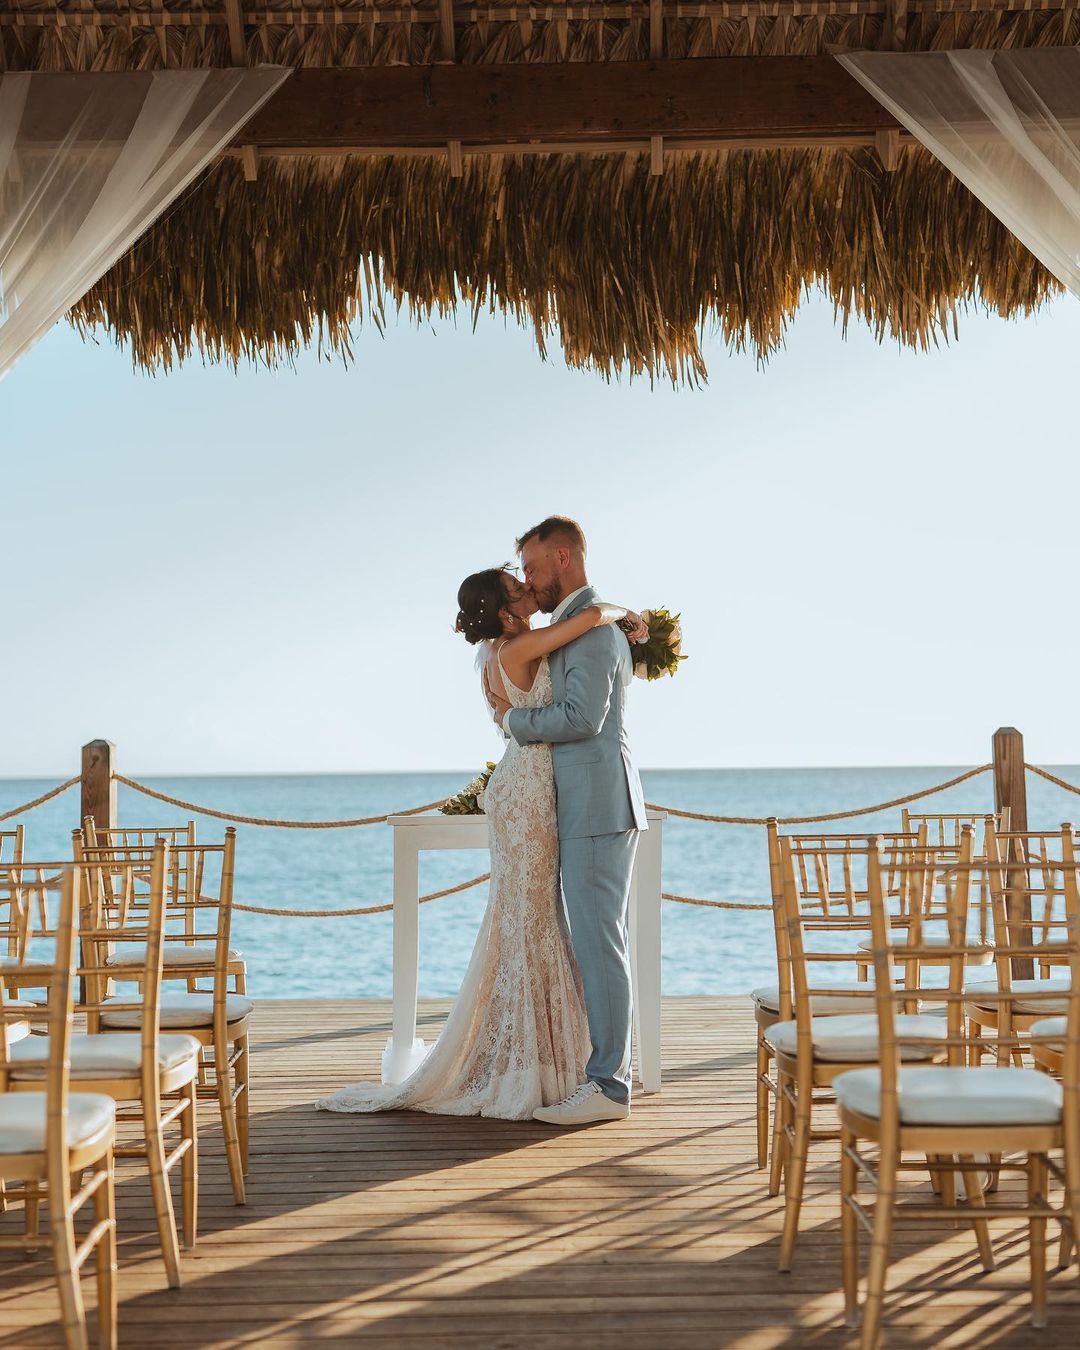 Cheers Travel: realizando o sonho de um destination wedding no Caribe